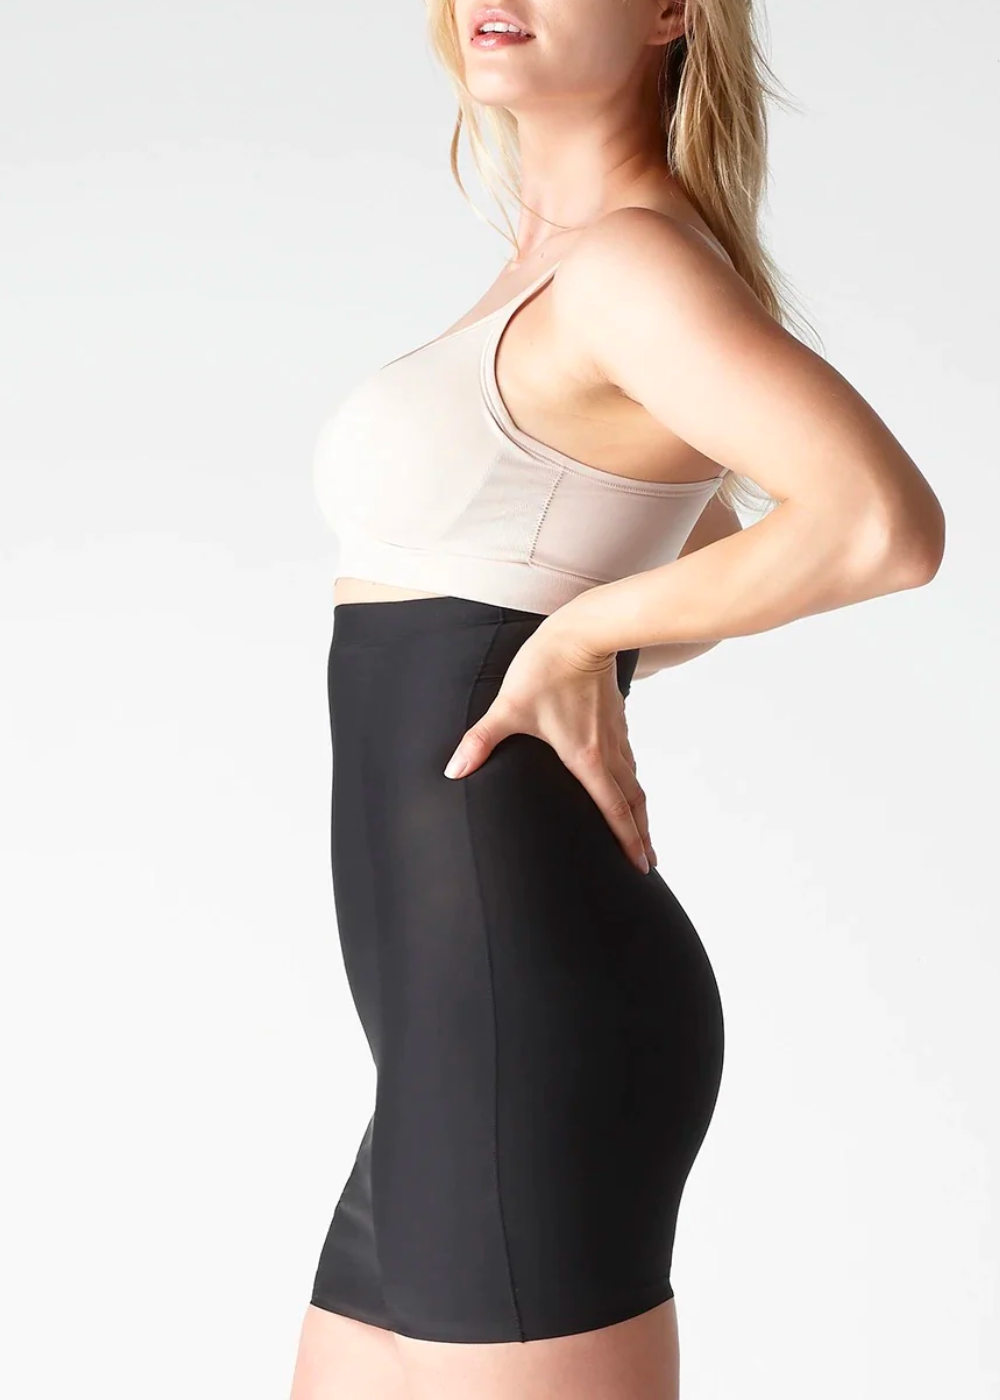 Women's Second Skinnies Slimmers Reversible Hi-Low Waist Slip